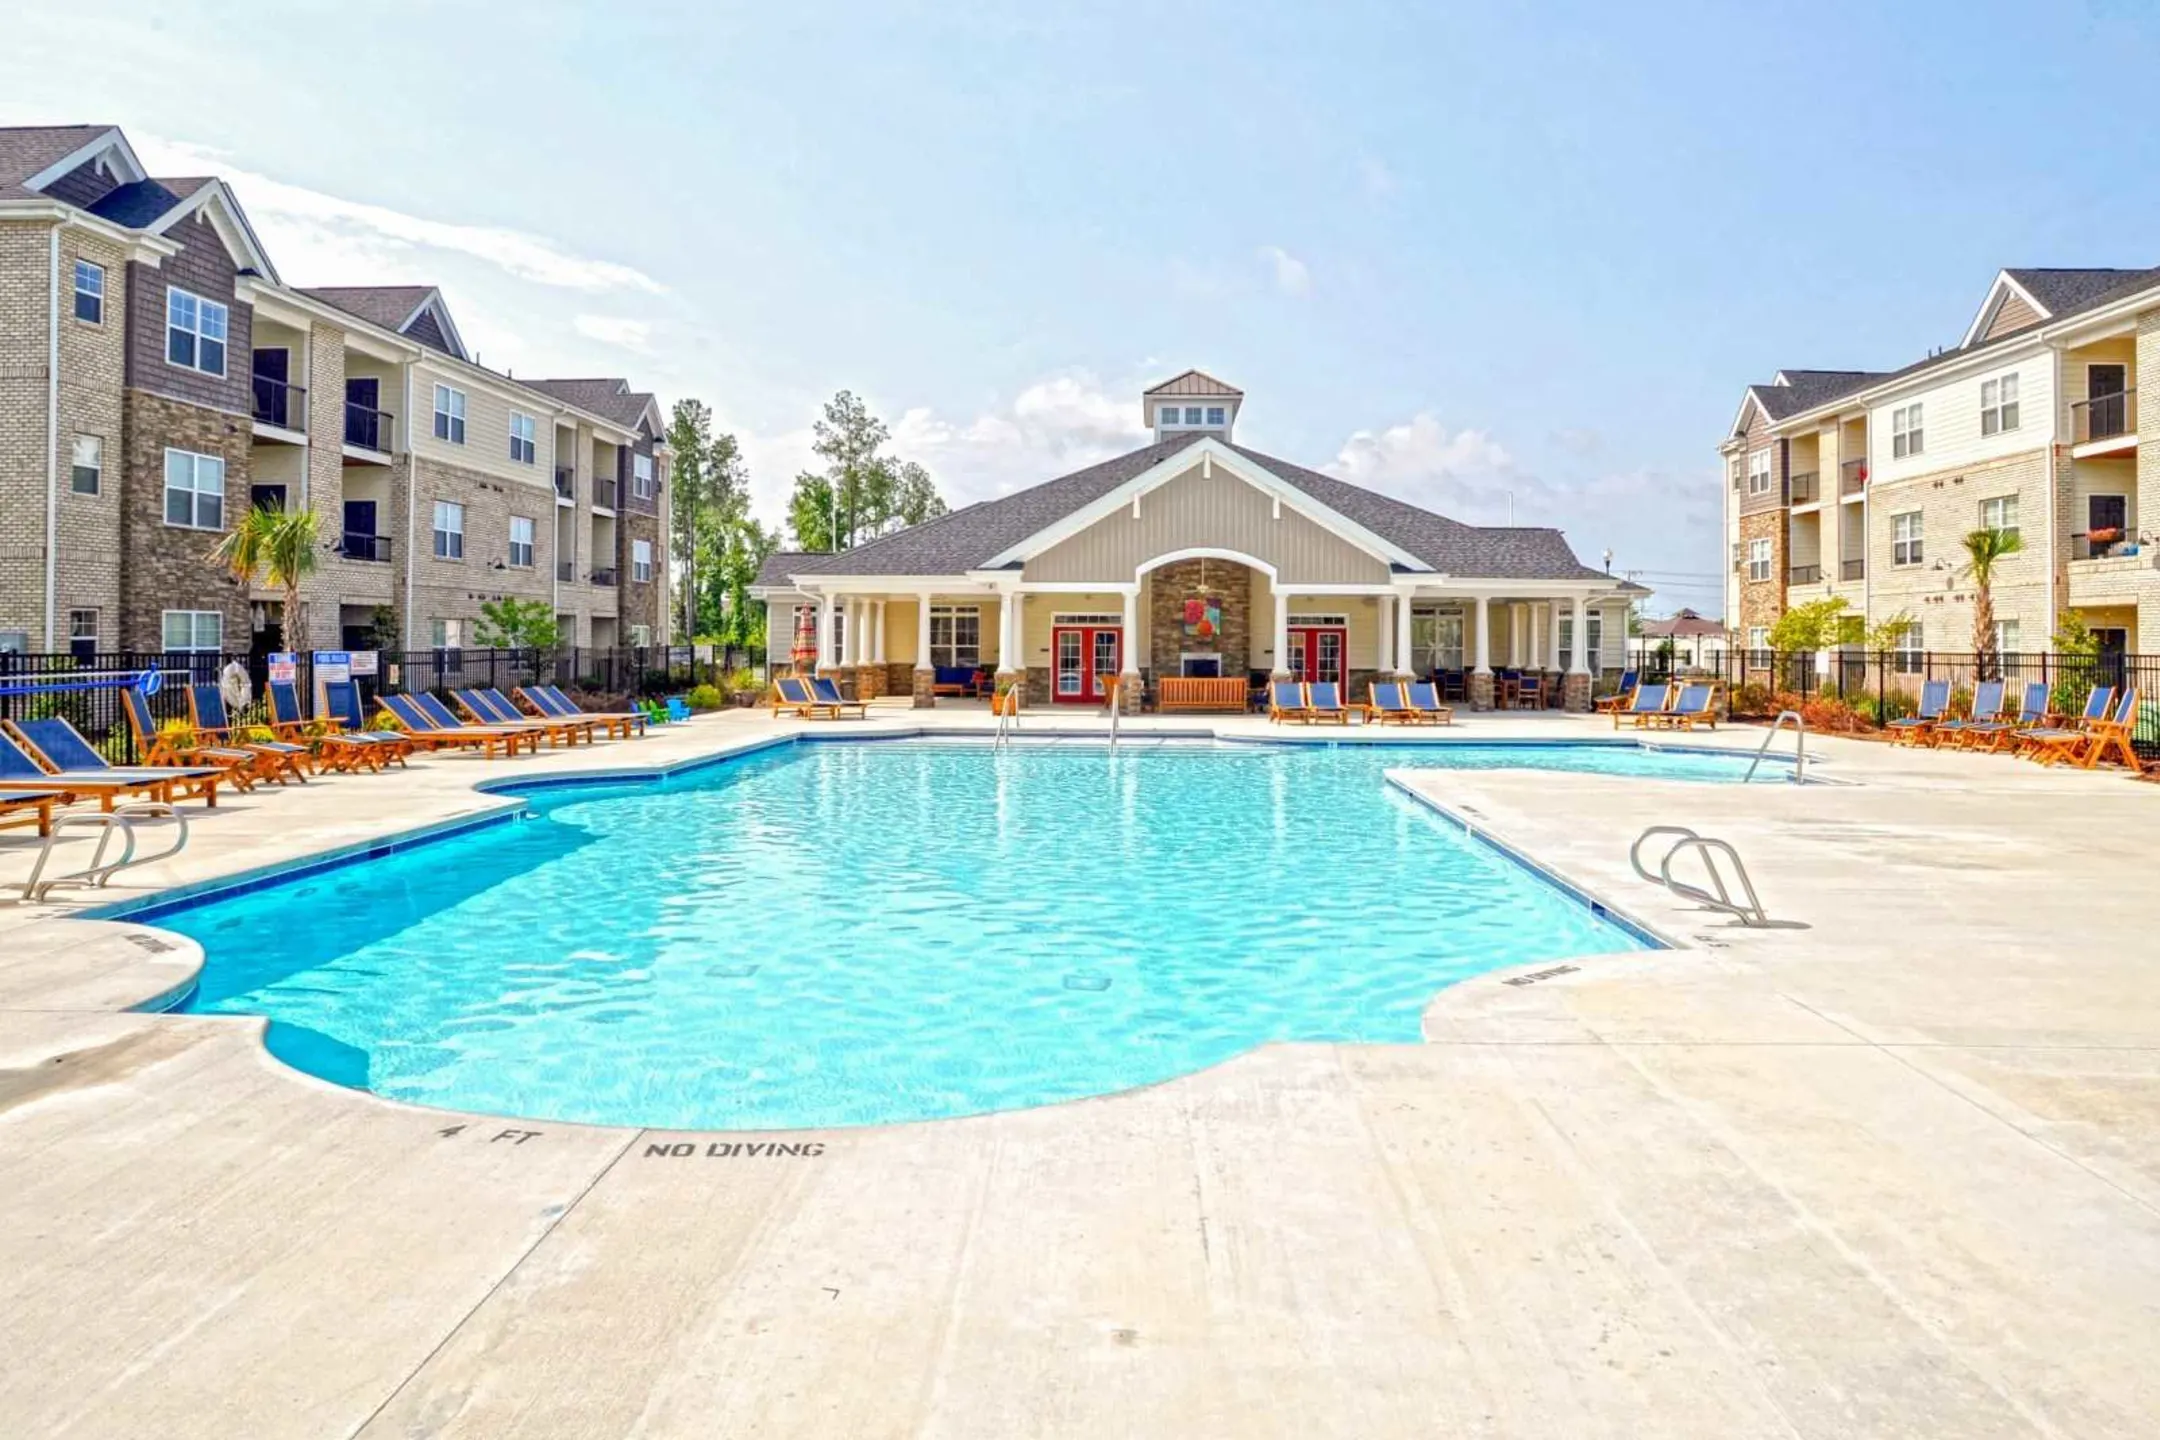 Pool - Palisades of Jacksonville Apartments - Jacksonville, NC